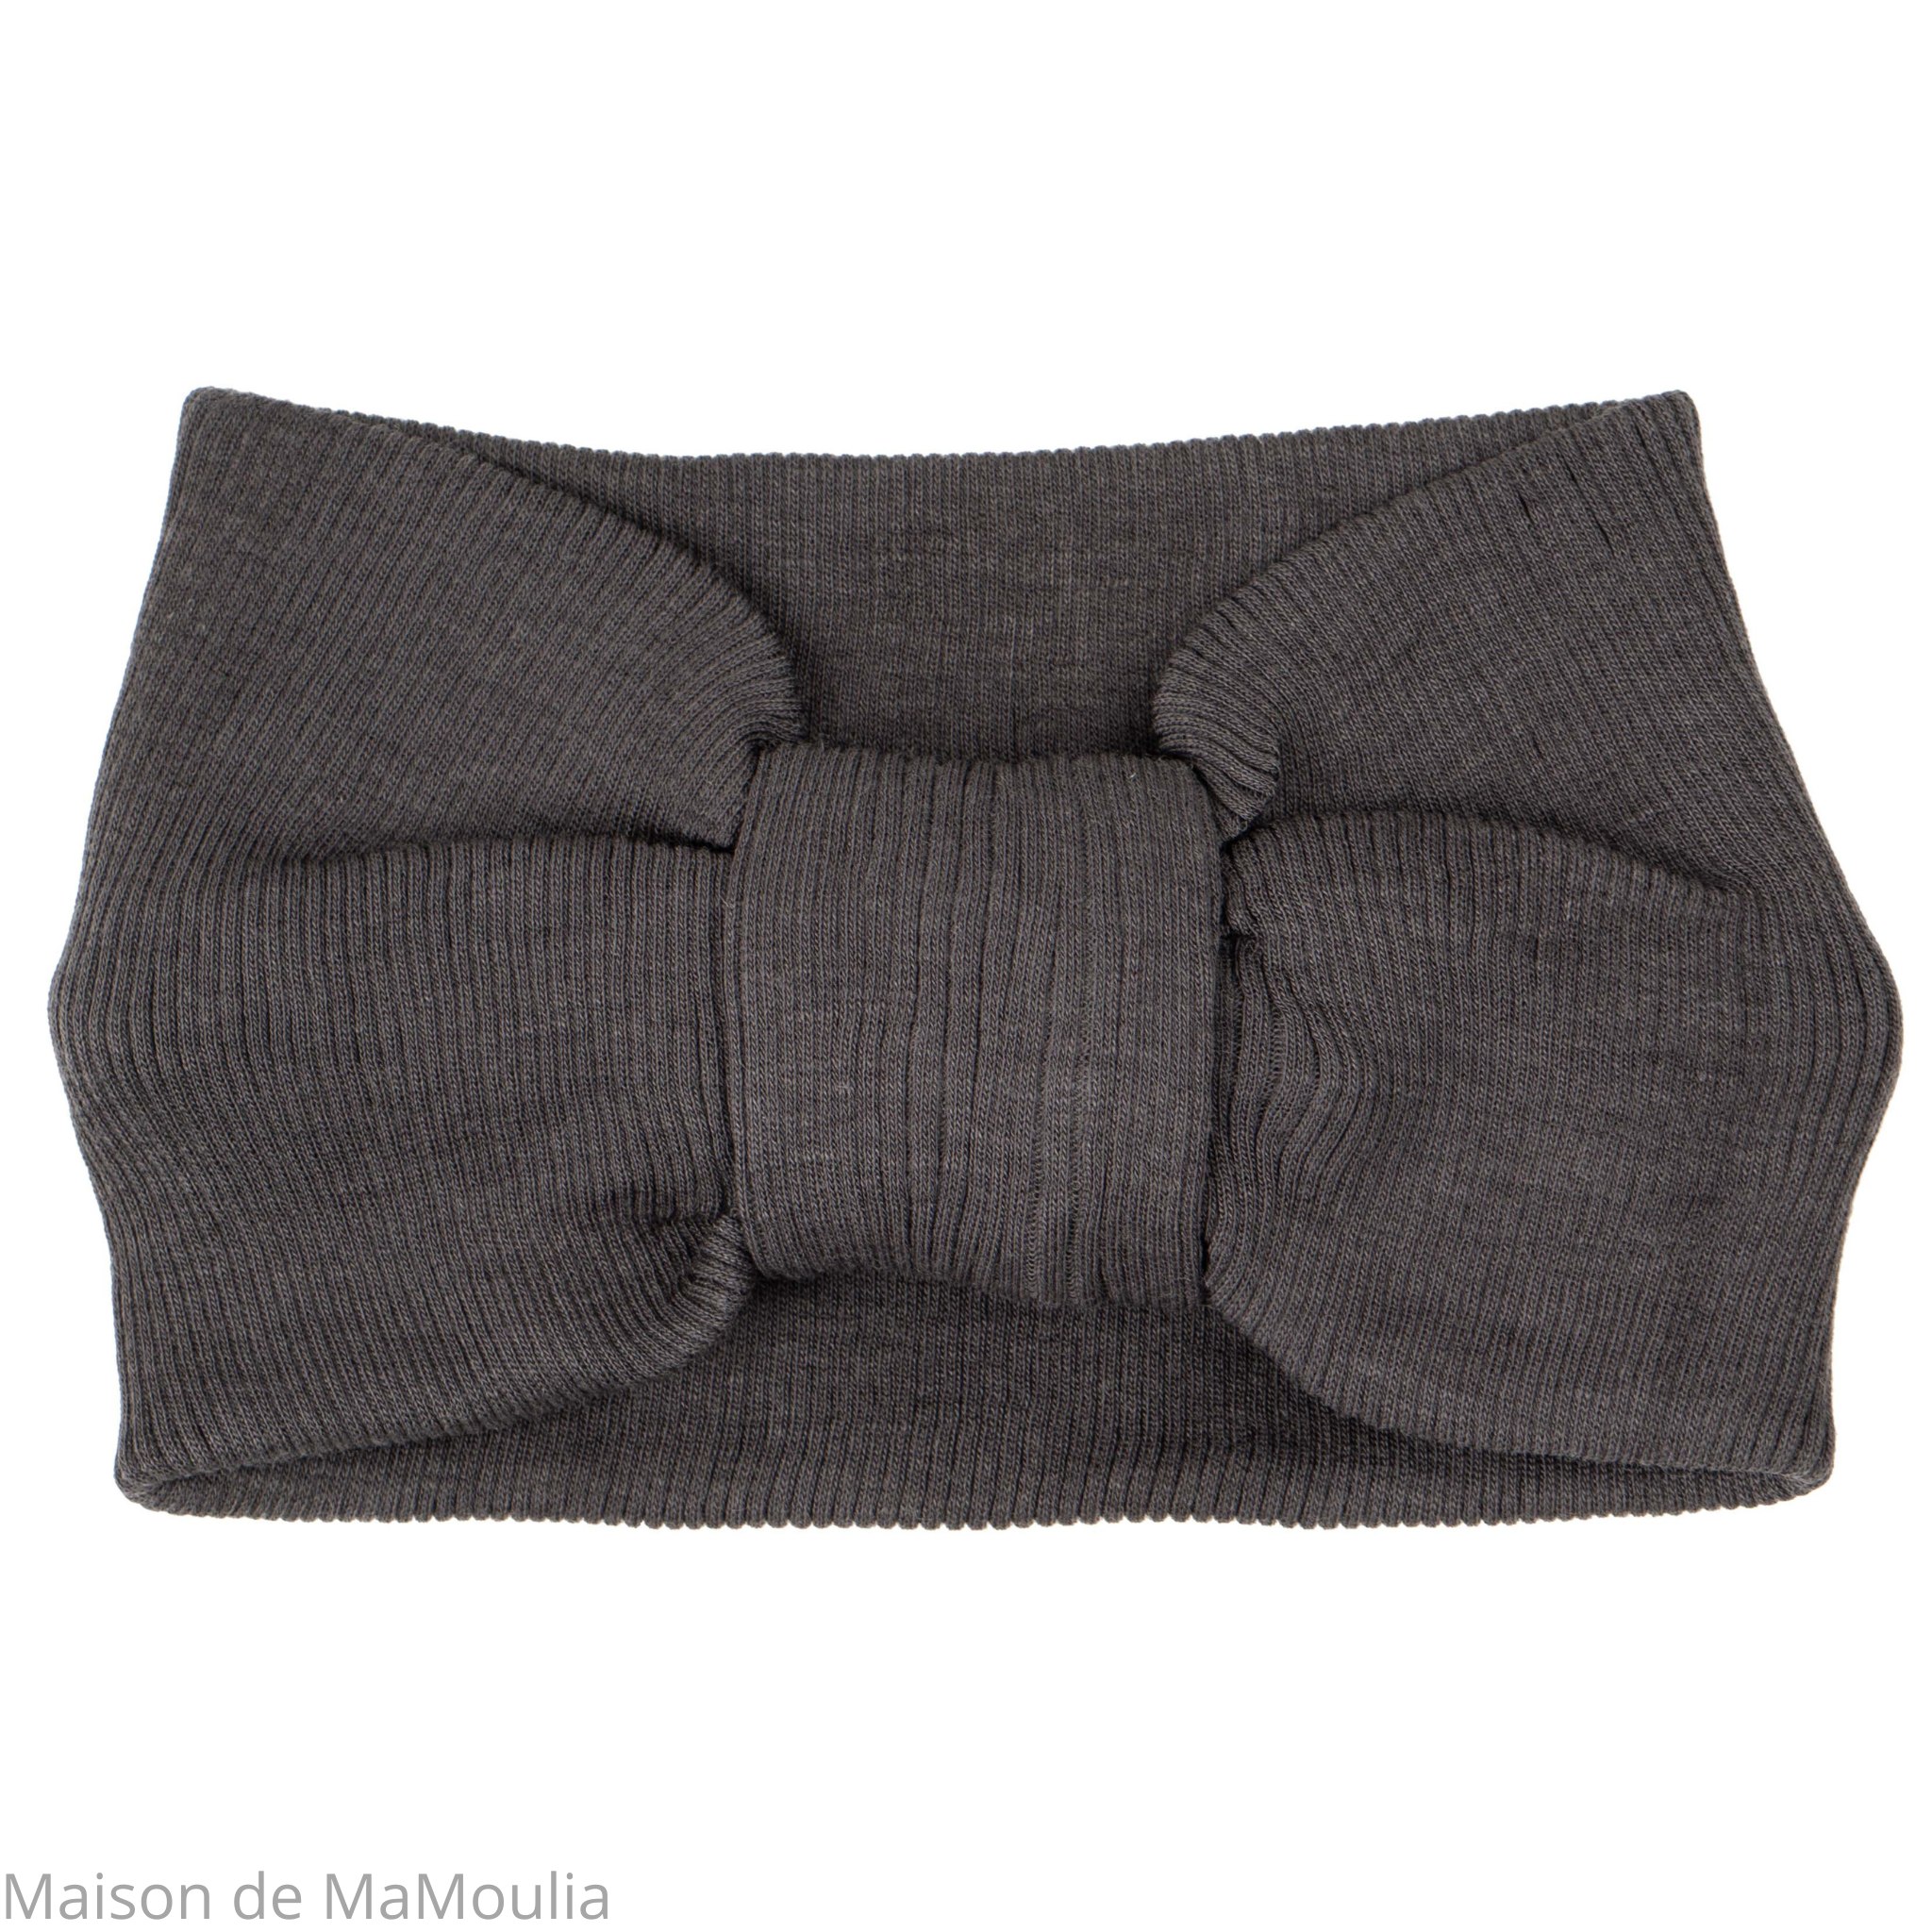 bandeau-tour-de-tete-femme-laine-merinos-minimalisma-maison-de-mamoulia-noir